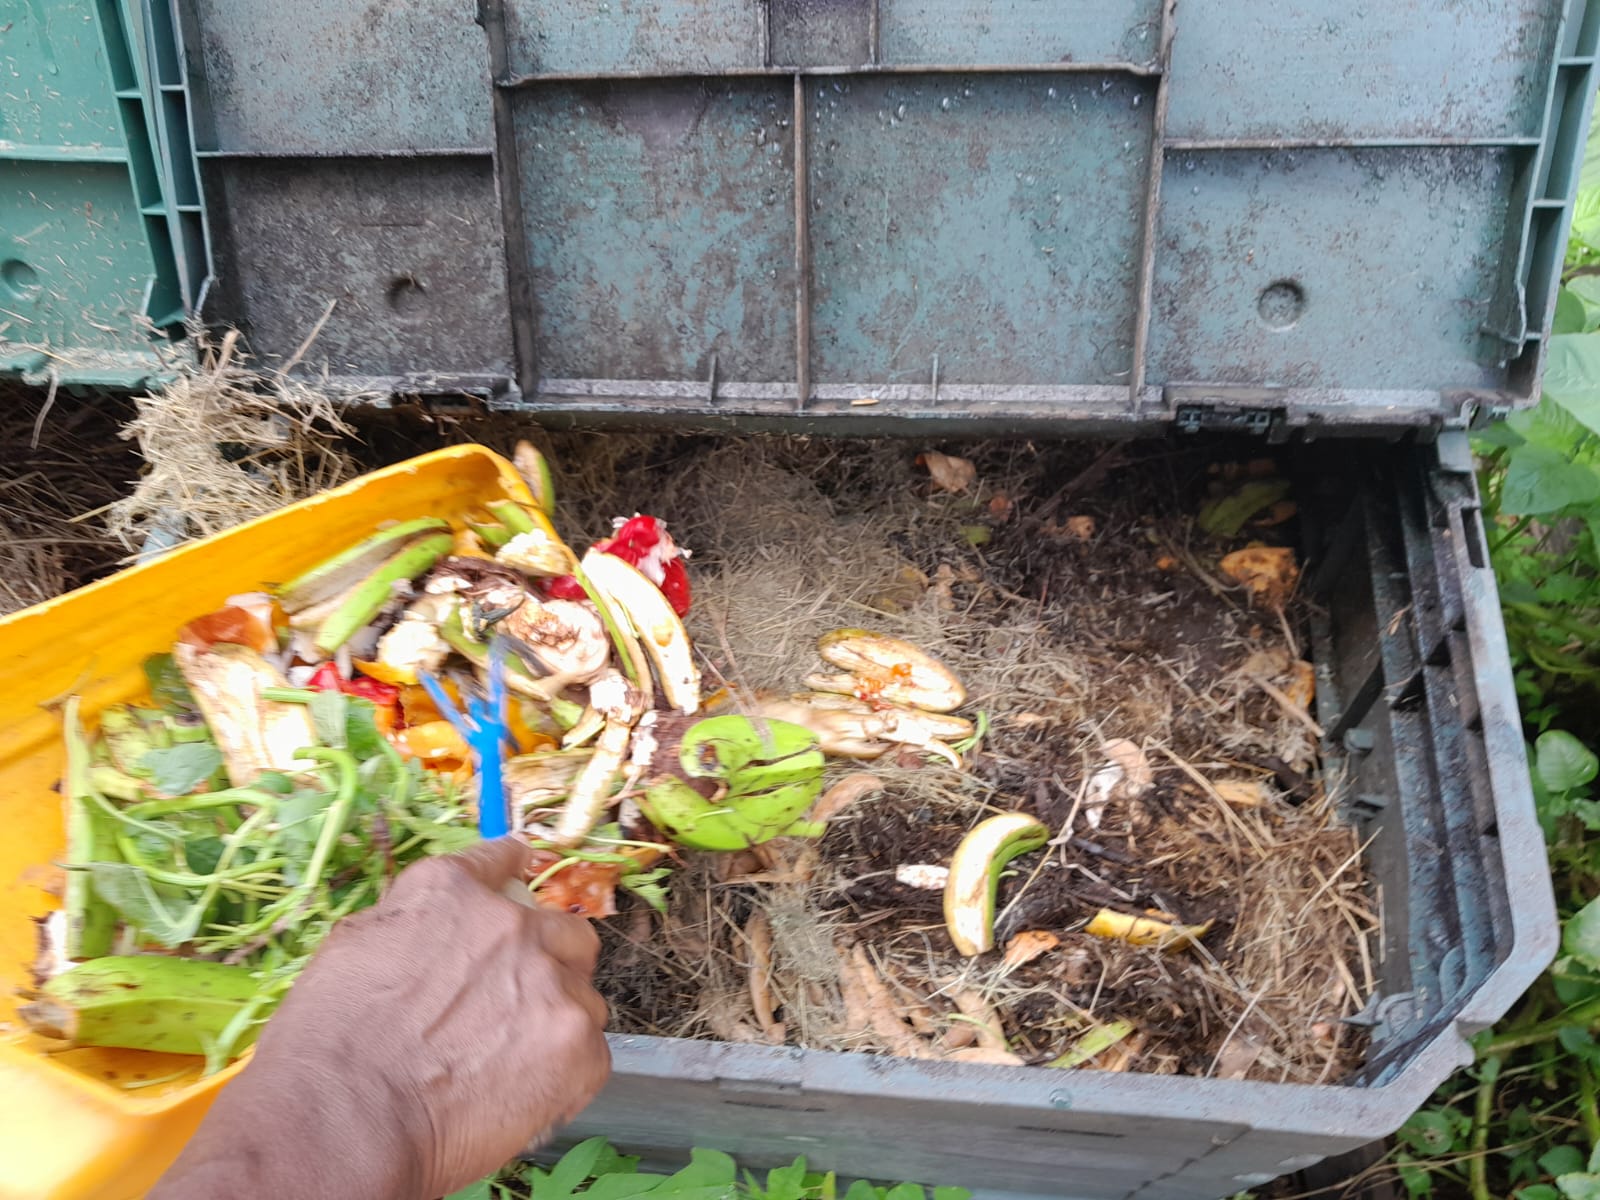     Des « guides composteurs » bénévoles pour sensibiliser à l’usage du compost

